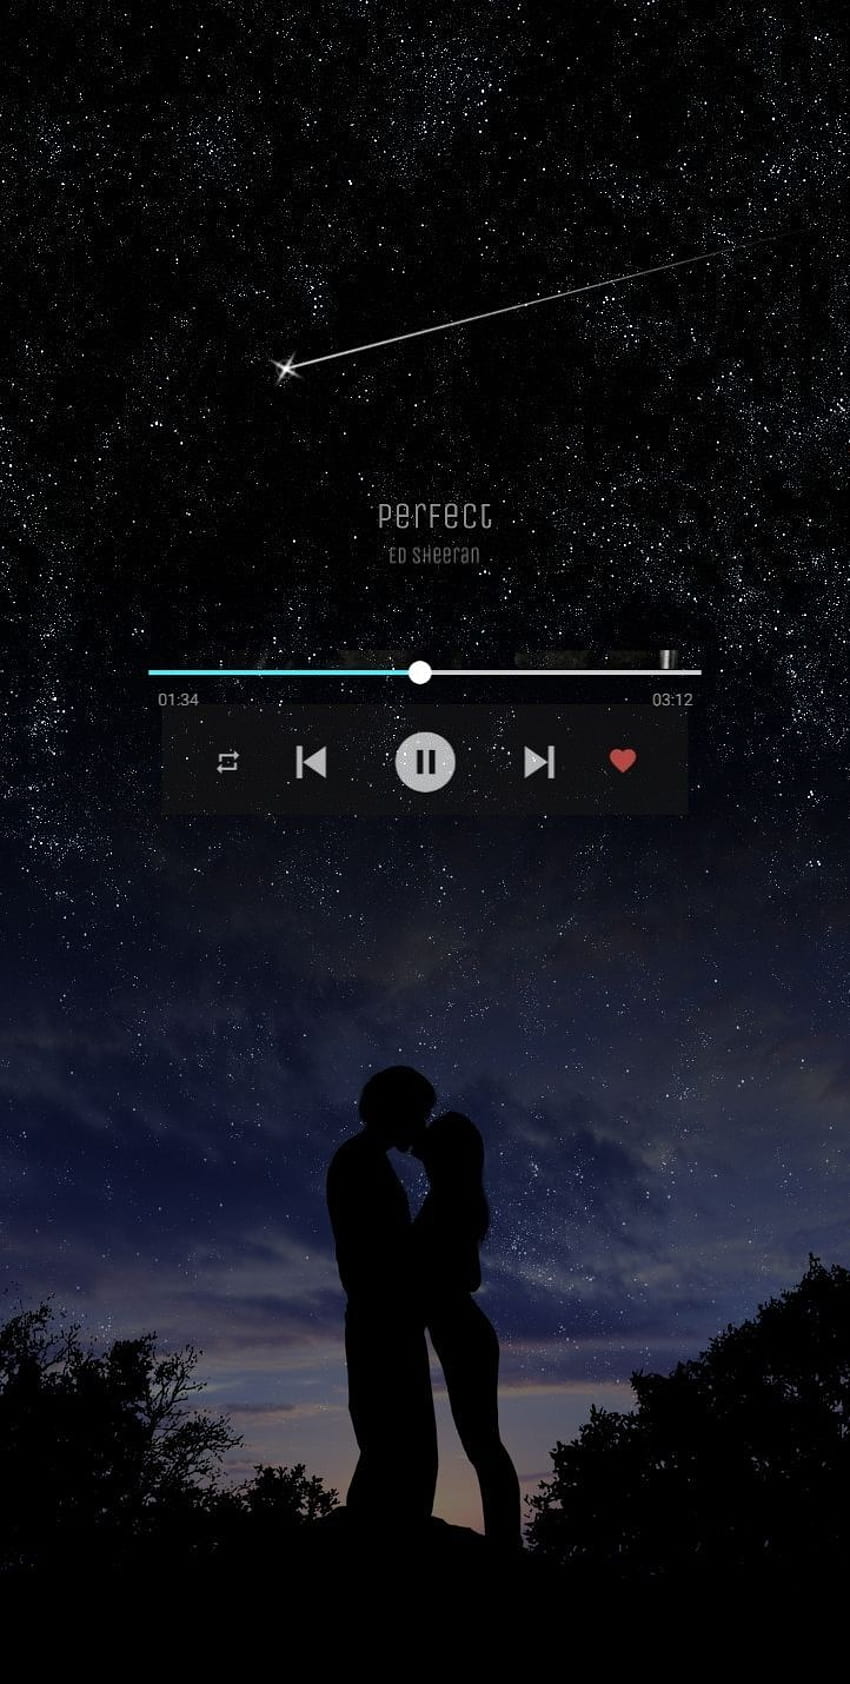 Ed sheeran perfect HD phone wallpaper | Pxfuel